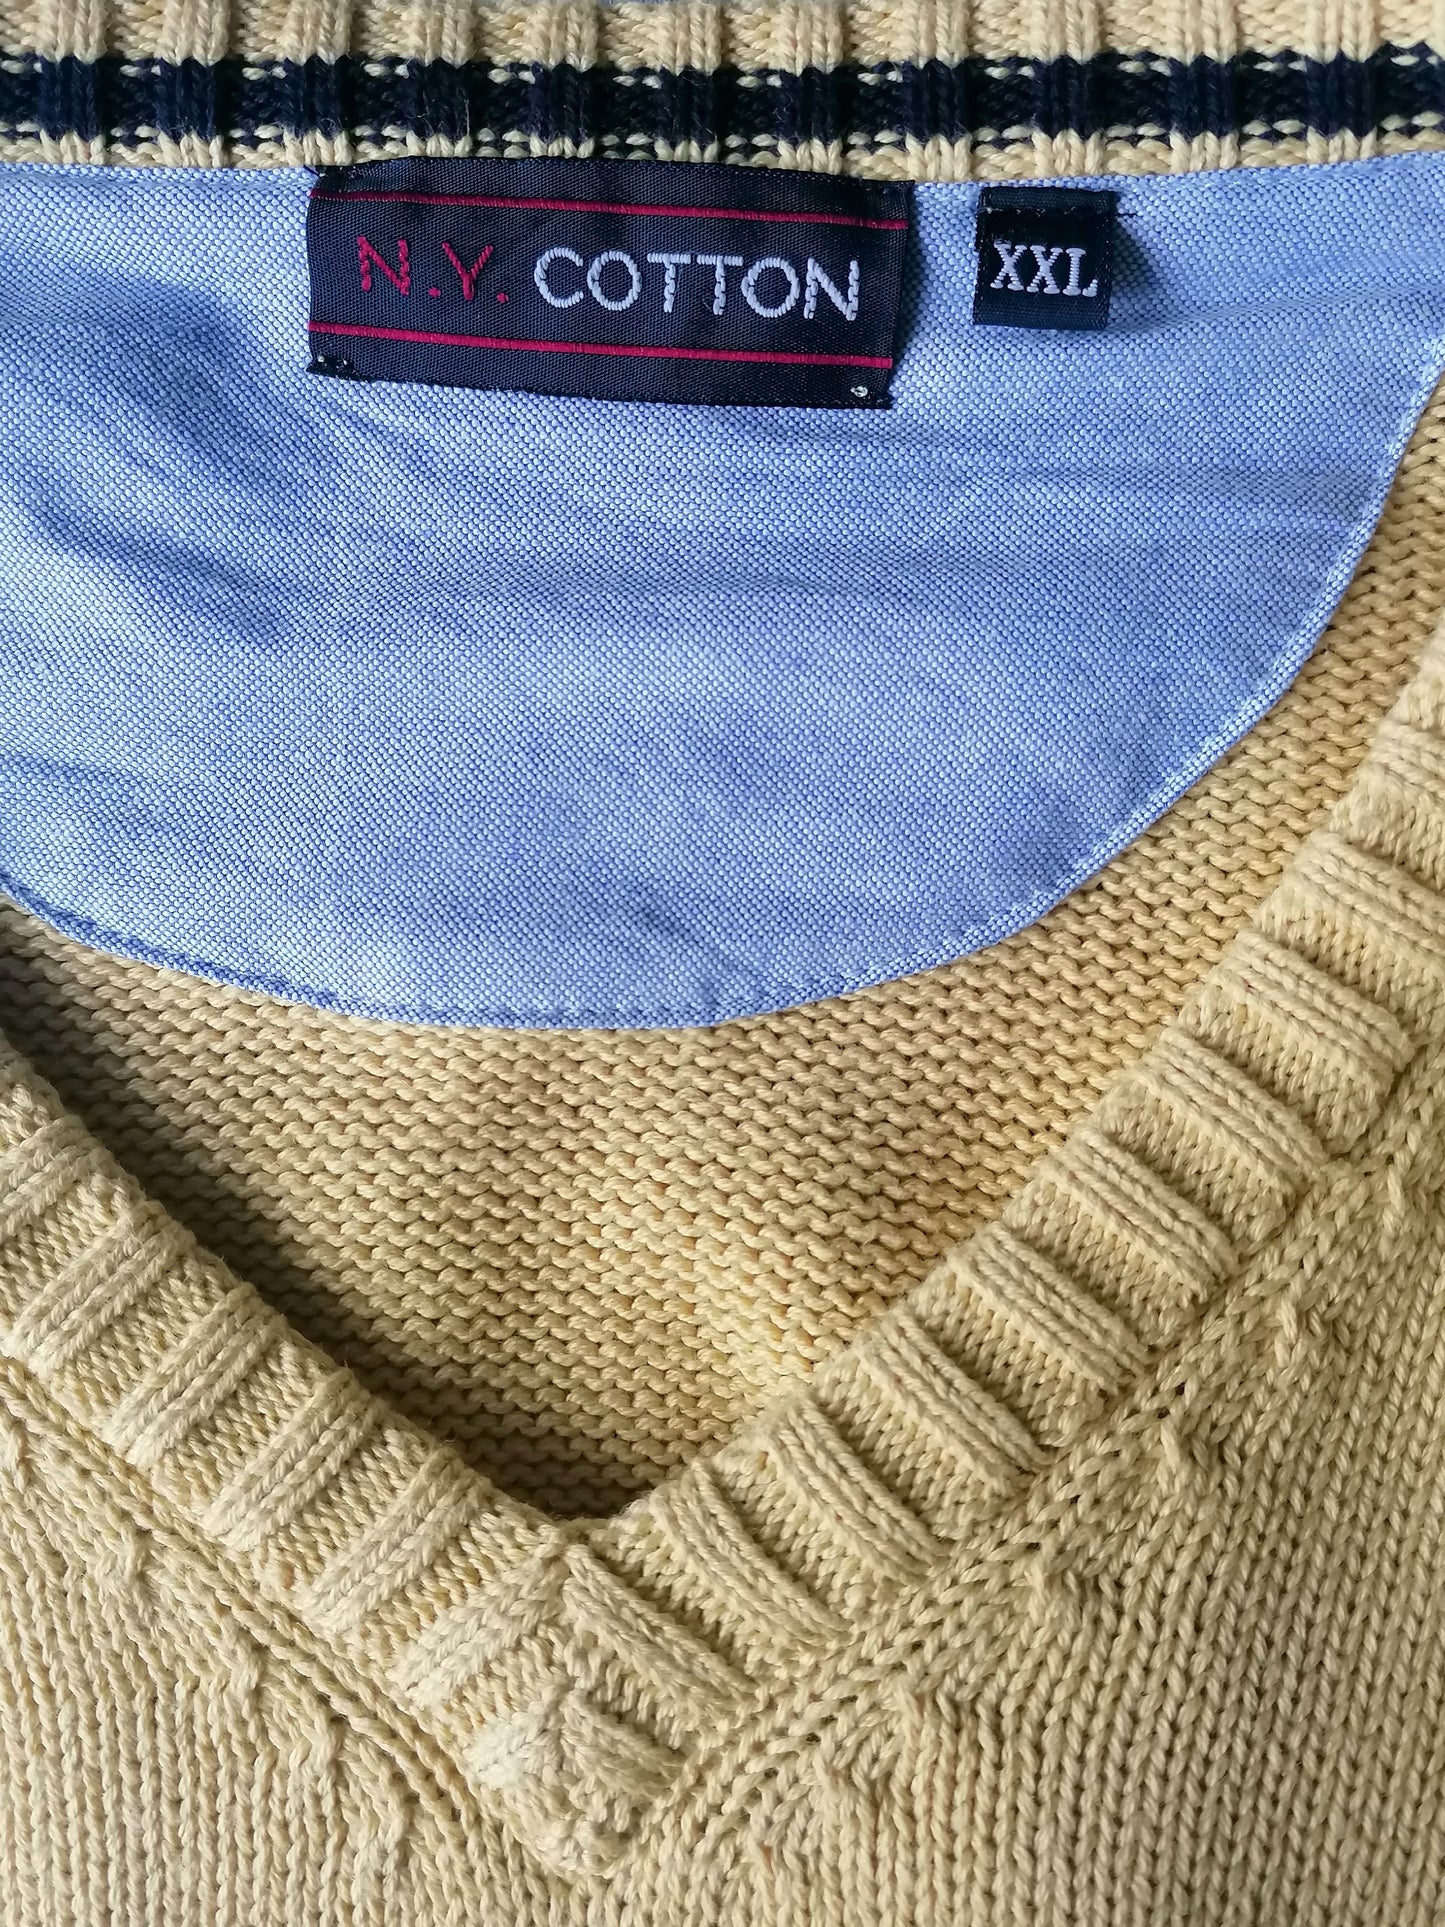 Maglione di cotone di ny coton con scollo a V. Colore giallo. Dimensione XXL / 2XL.